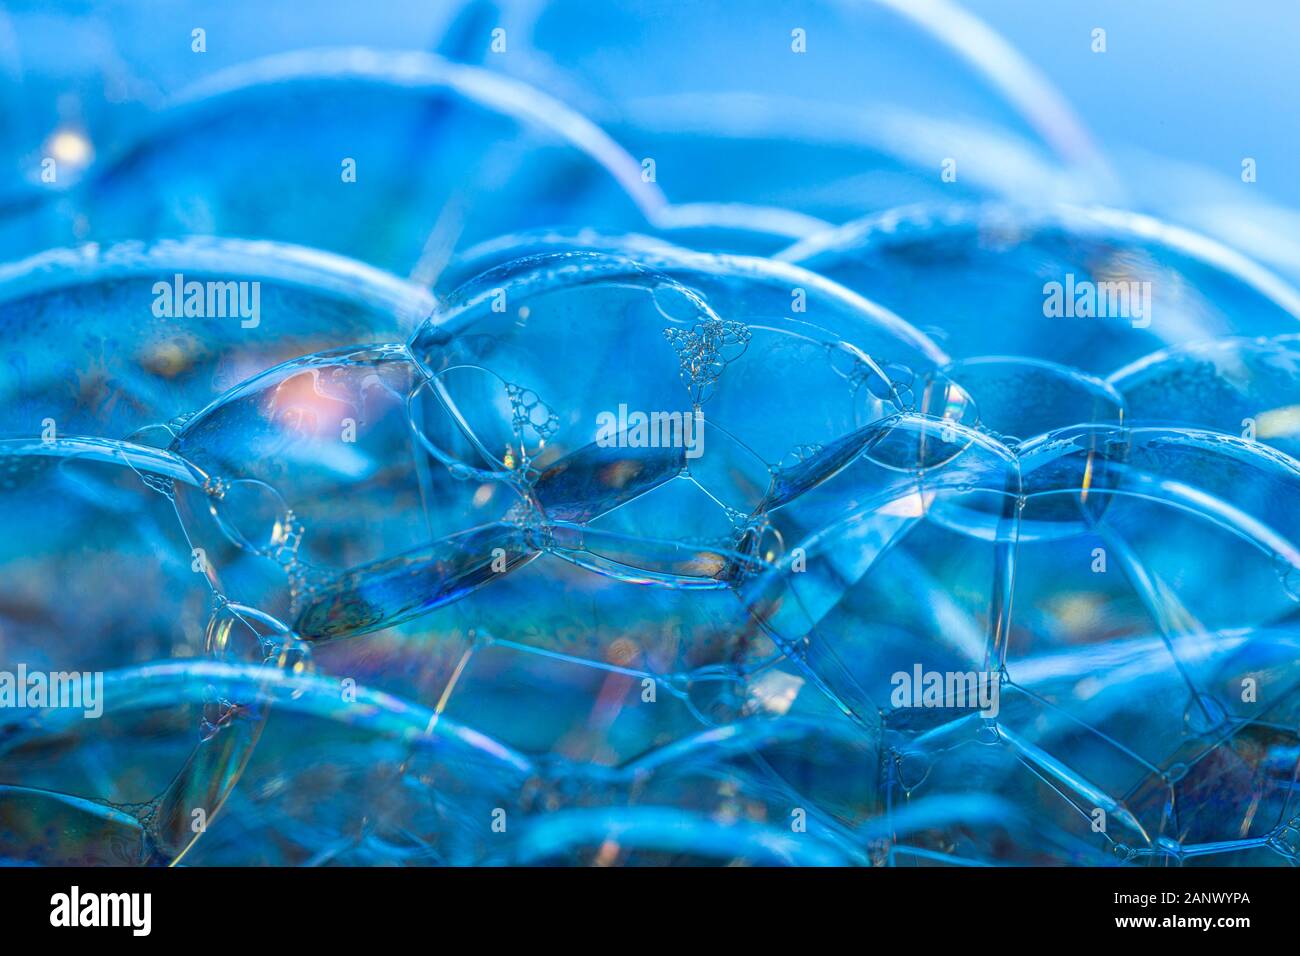 Kreative Zusammenfassung Hintergrund von bunten Blasen Struktur in leuchtenden Blautönen gemacht Stockfoto